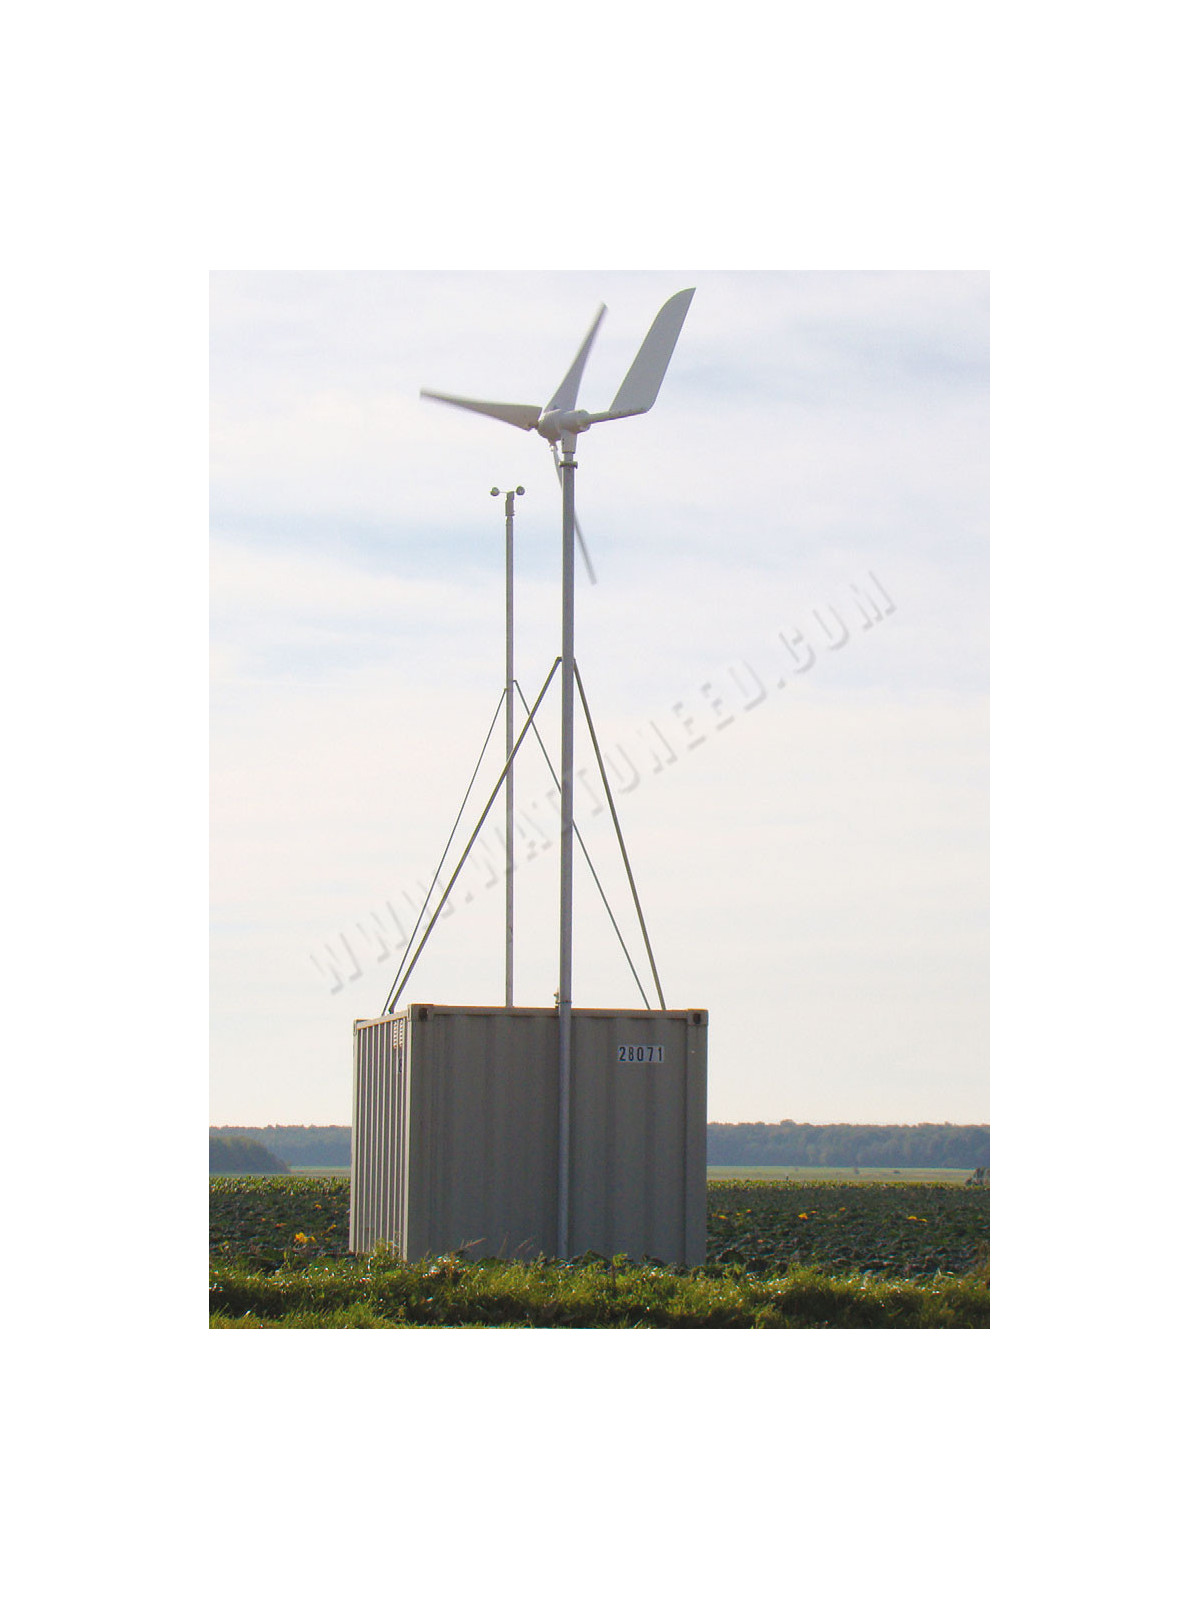 Superwind 1250W 48V wind turbine